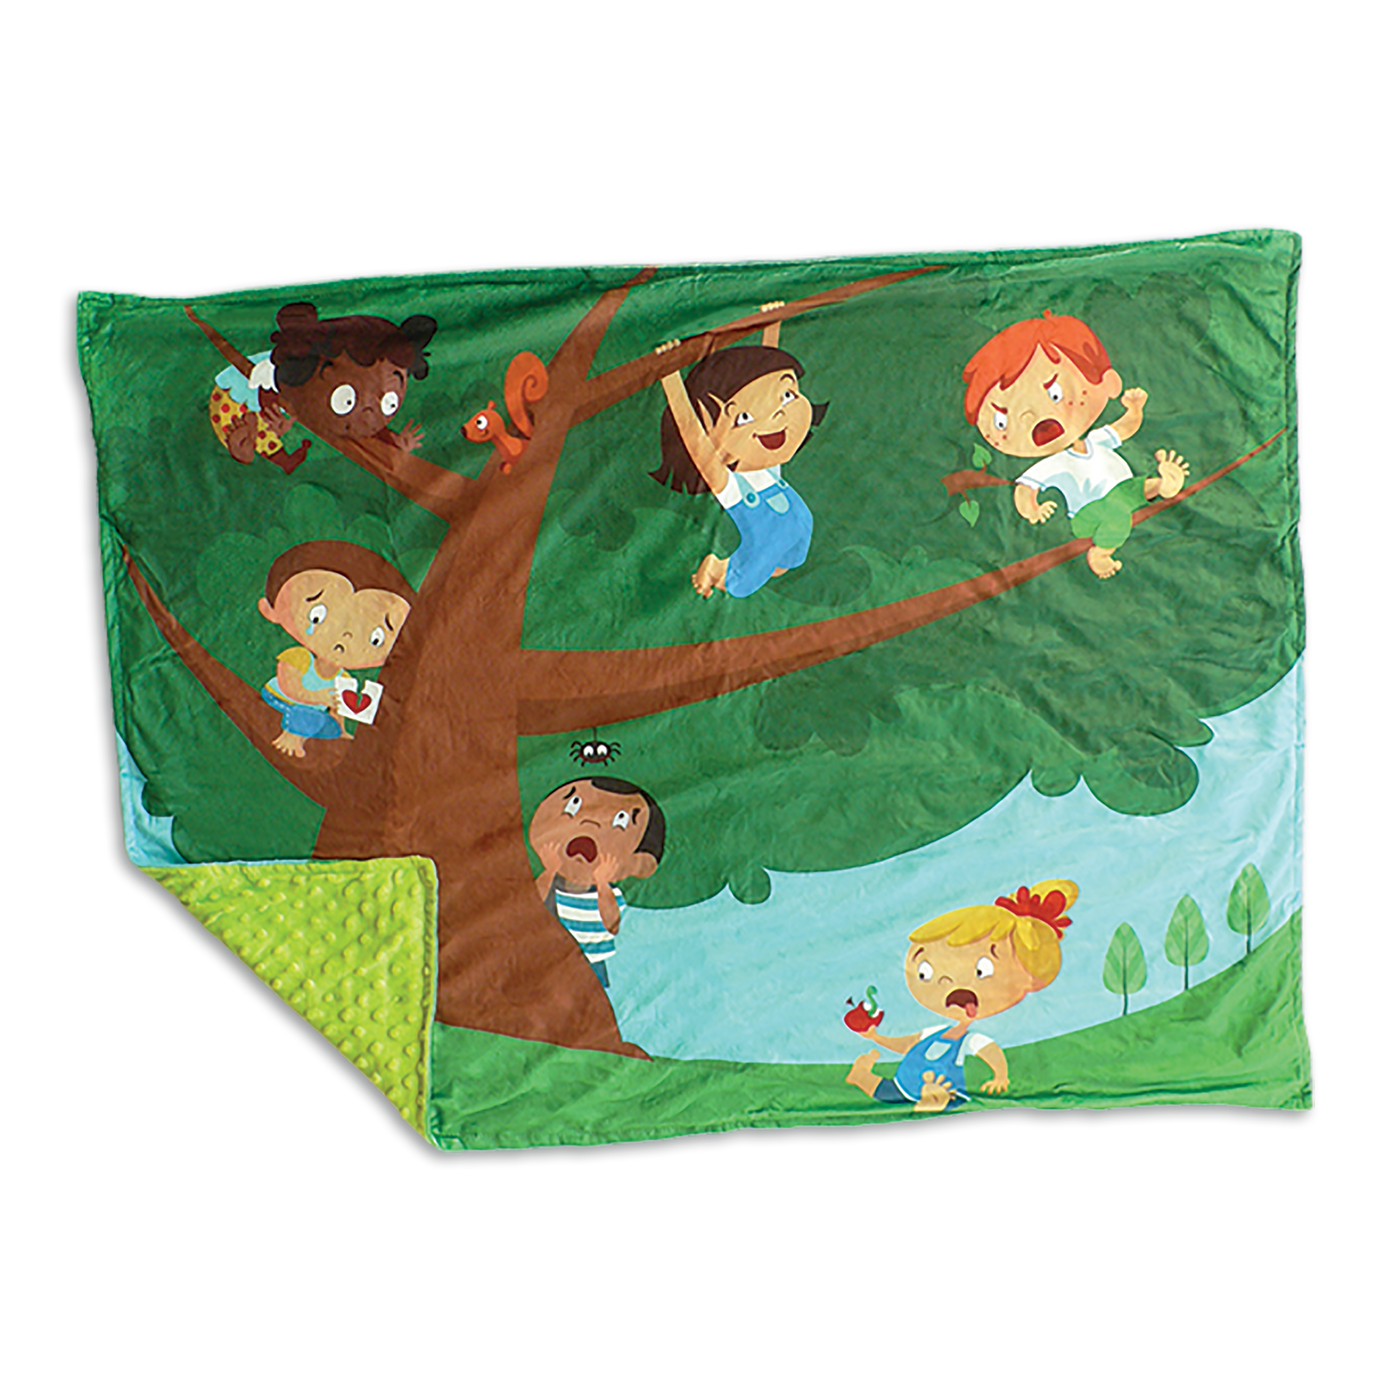 Doudou des émotions - Doudou: arbre et 6 enfants représentant chacun une émotion, coin replié montrant le verso vert en minky